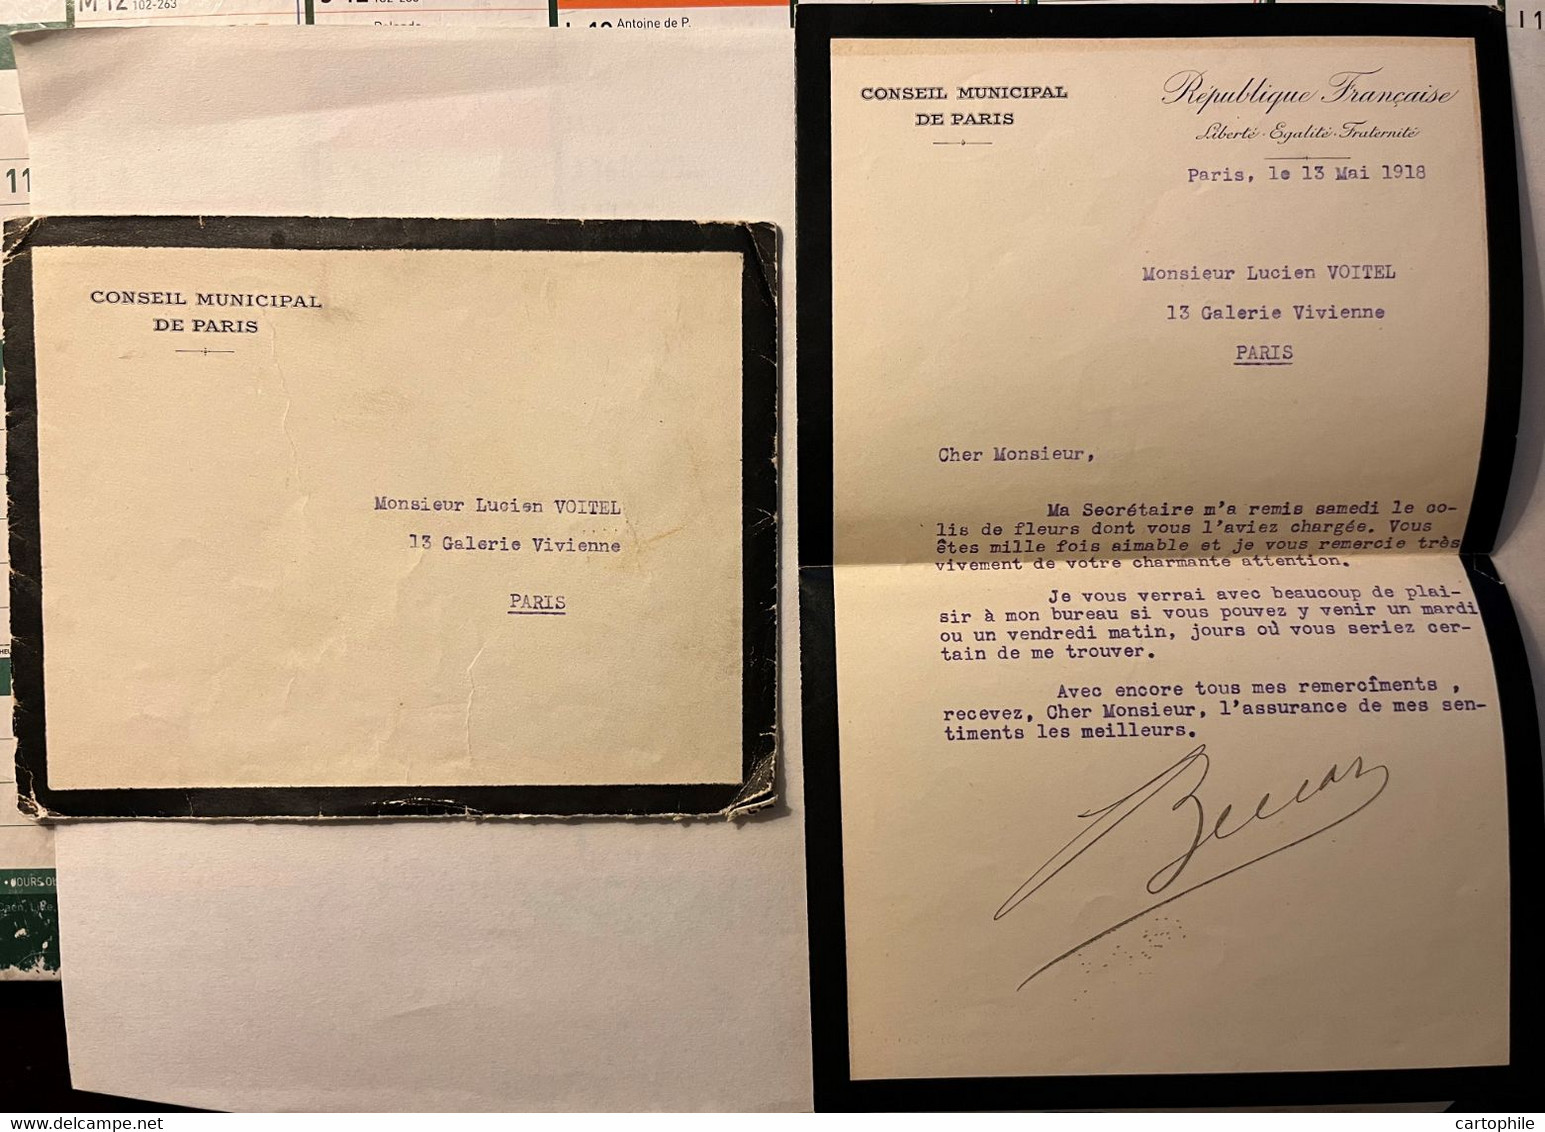 LAC Autographe De Leopold Bellan - Conseil Municipal De Paris En Mai 1918 - Homme Politique - Manuscripts